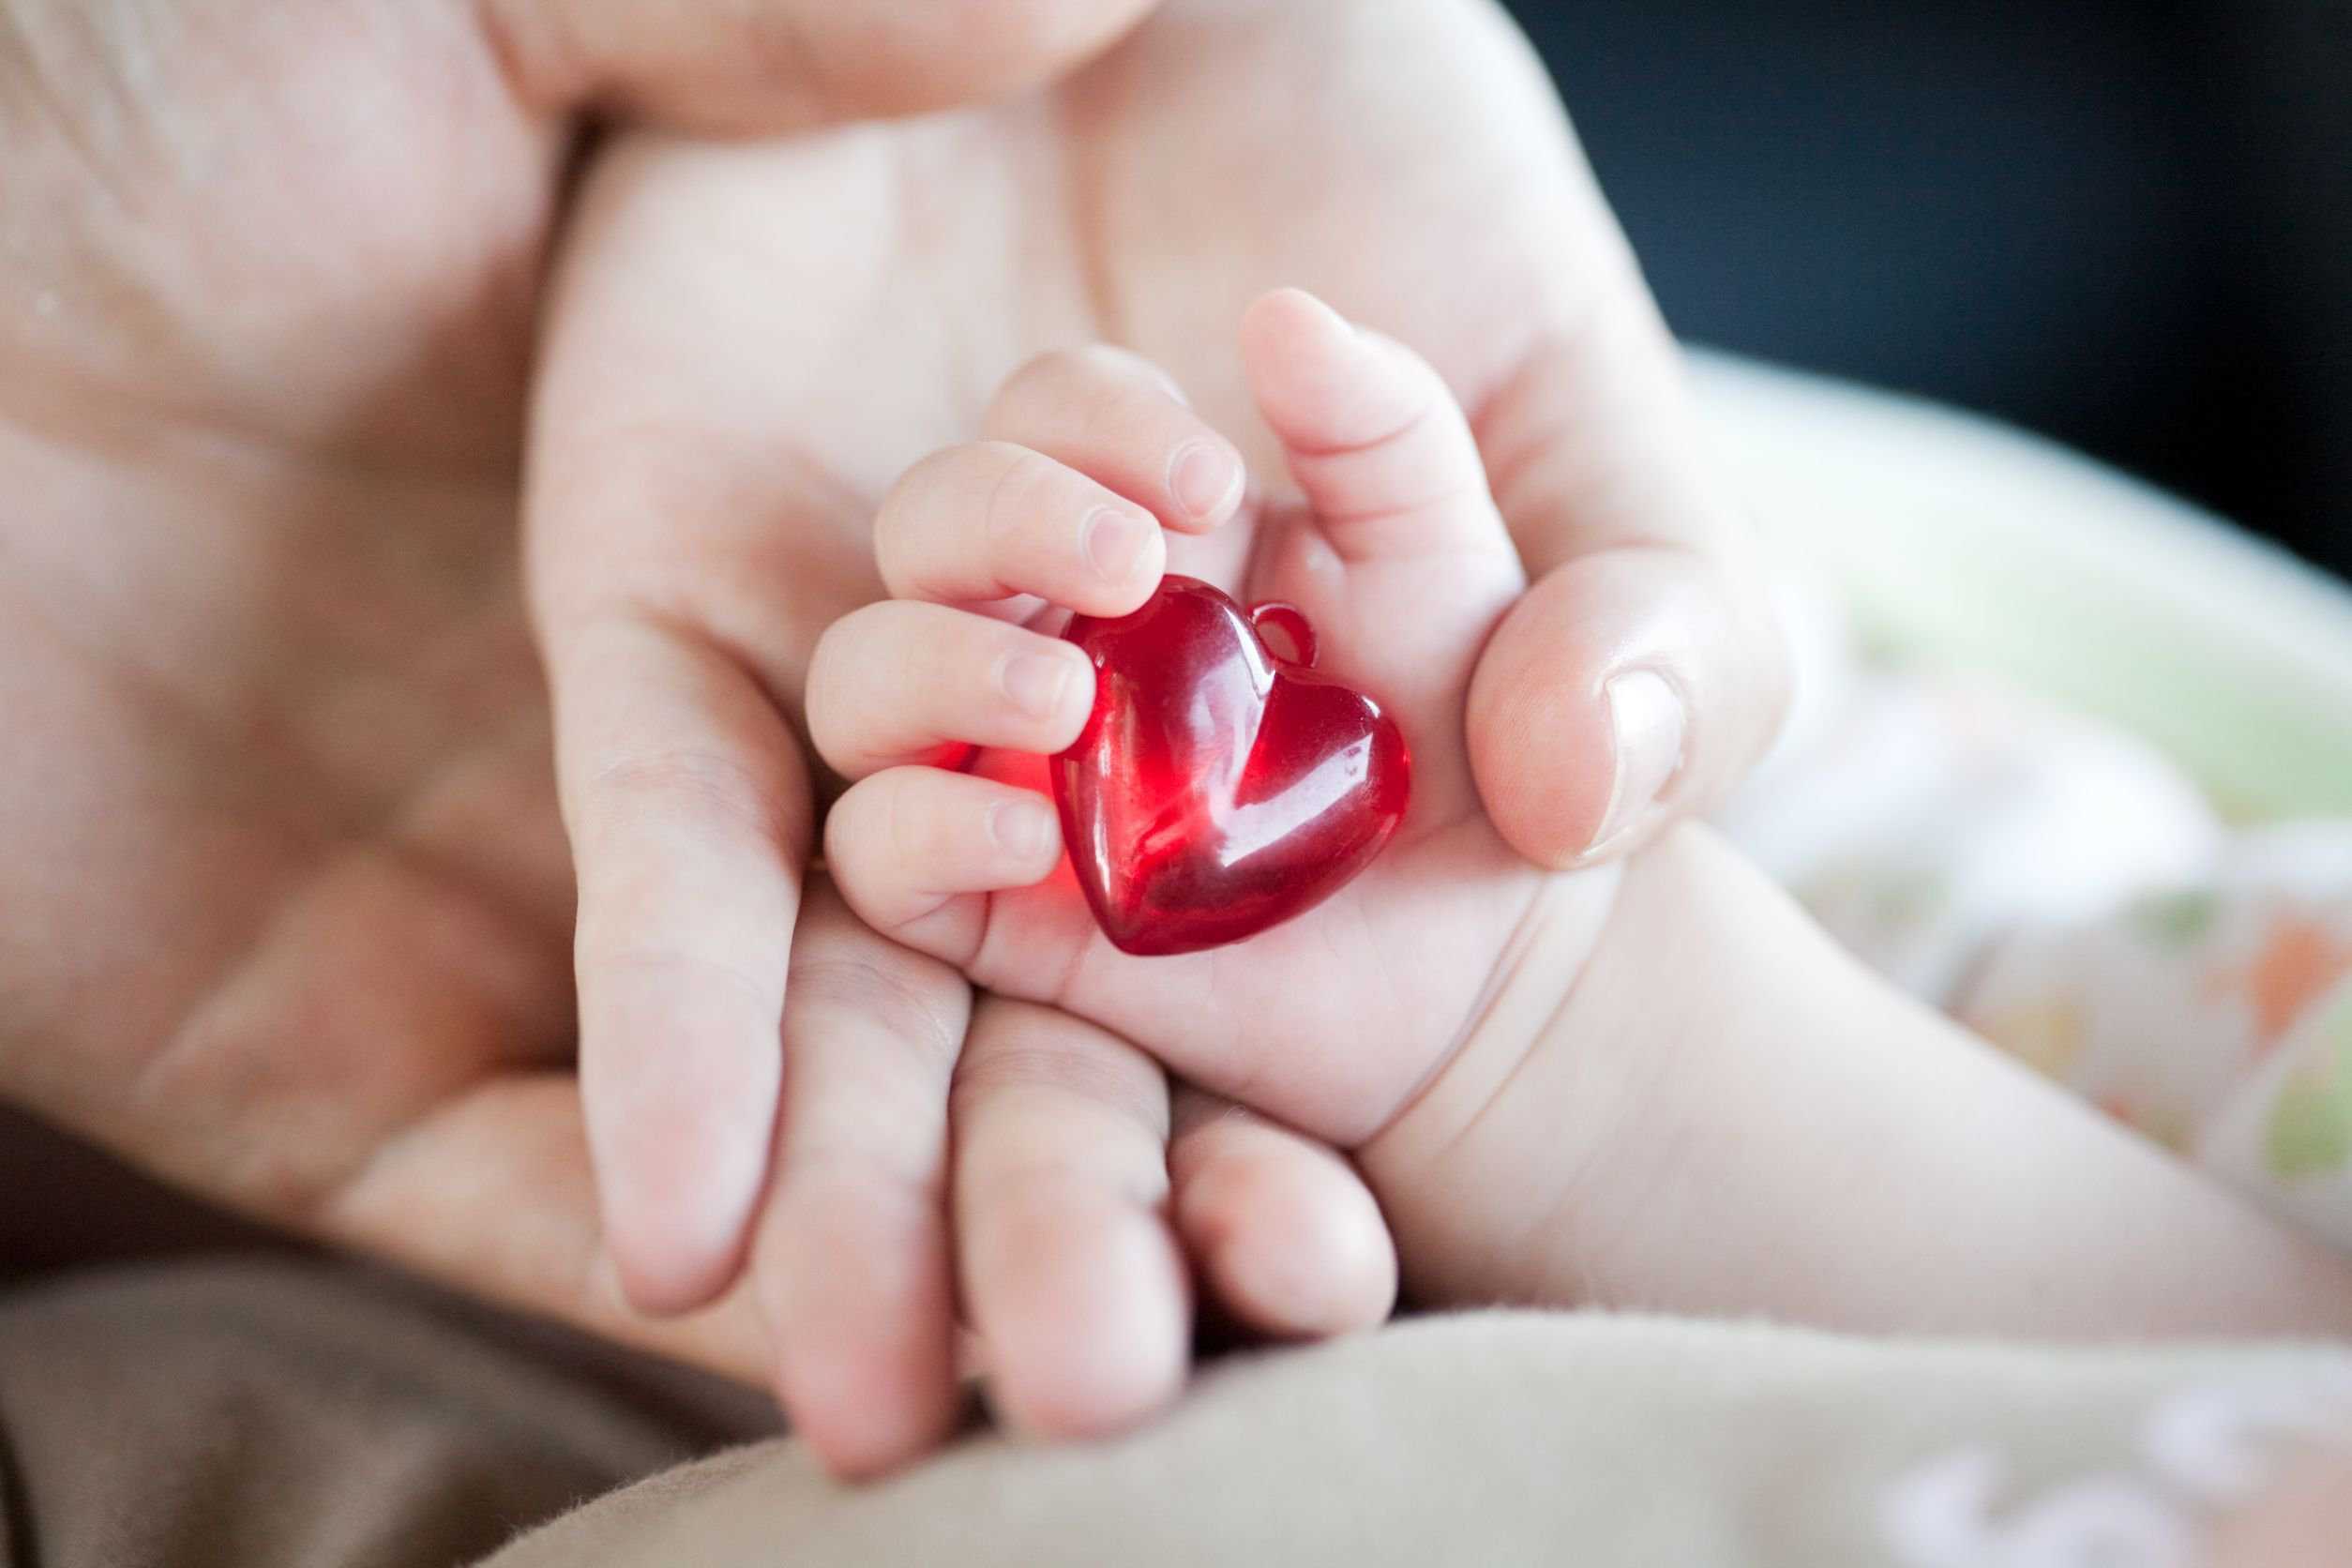 Congenital Heart Defects in Children